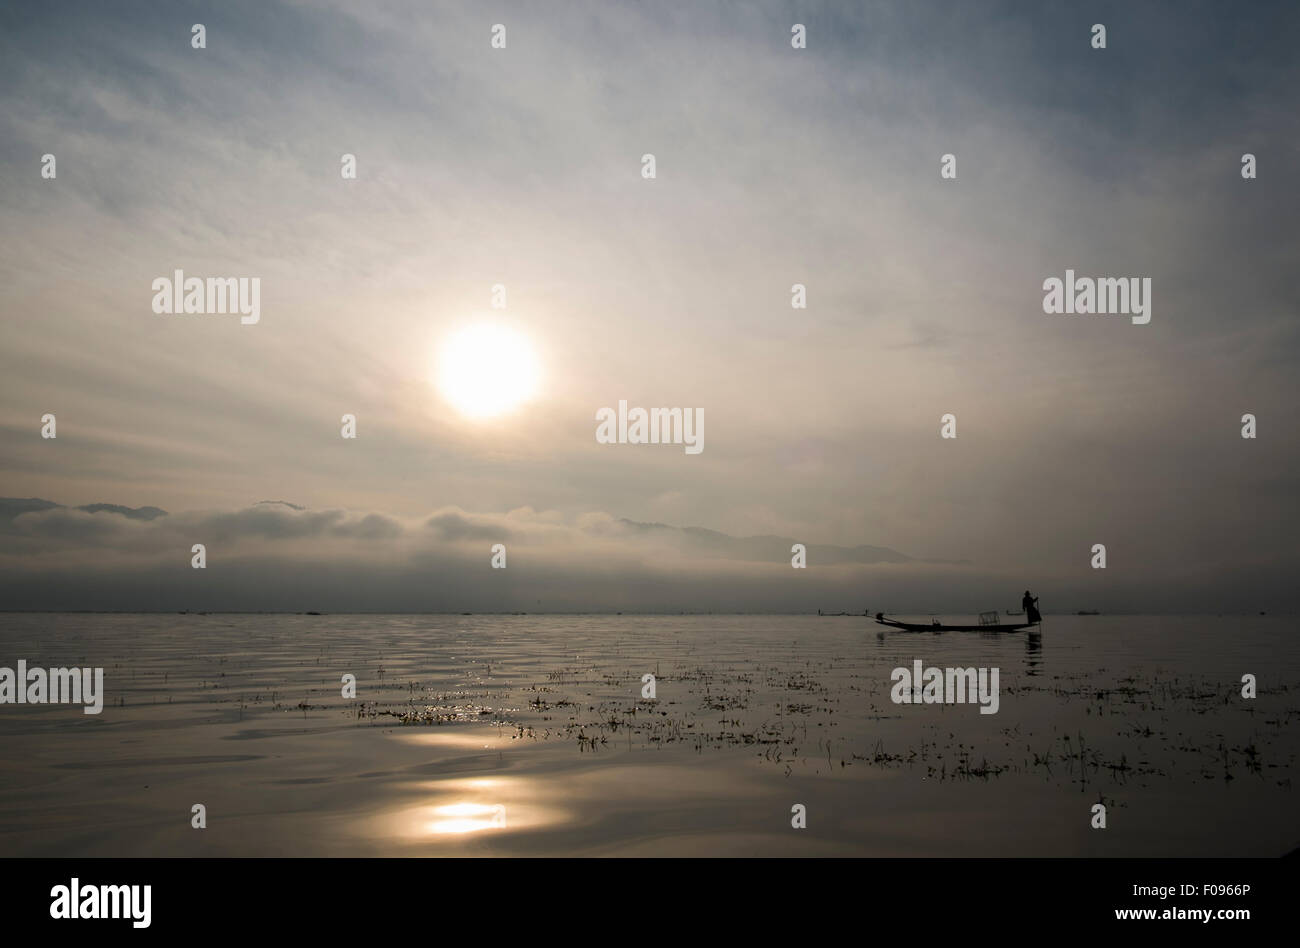 Le Lac Inle, Myanmar. Pêcheur au lever du soleil Banque D'Images